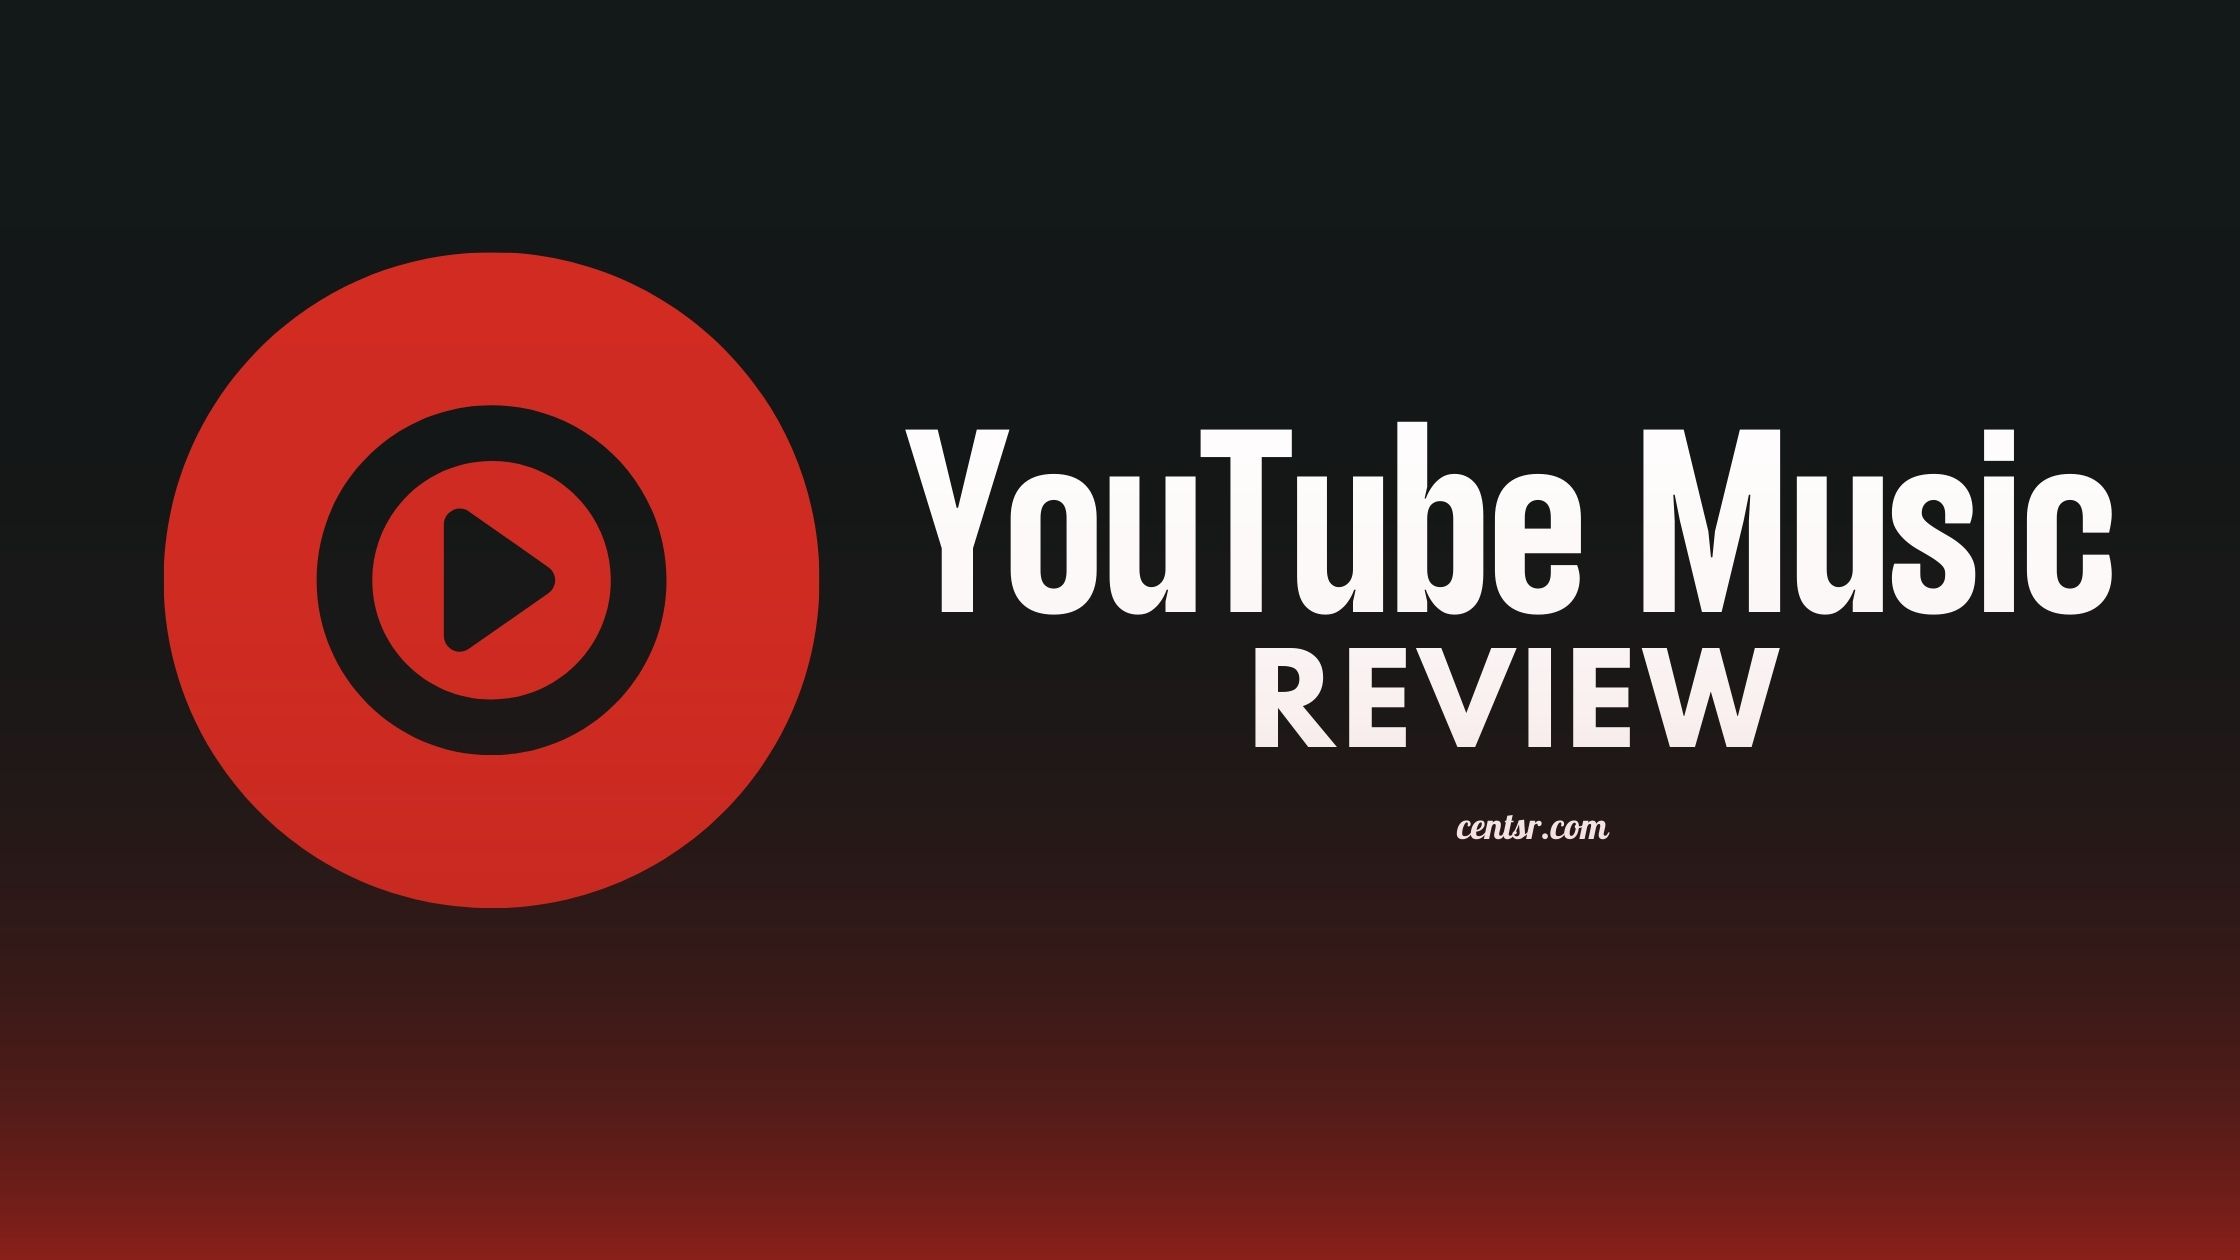 YouTube Music Premium là dịch vụ nhạc trực tuyến tốt nhất hiện nay, được cập nhật liên tục với những bài hát mới nhất. Với đầy đủ các bản phát âm chất lượng cao và không có quảng cáo, bạn có thể tha hồ thưởng thức các bài hát yêu thích của bạn mà không sợ bị gián đoạn. Hãy xem các hình ảnh liên quan đến YouTube Music Premium để trải nghiệm các tính năng tuyệt vời của dịch vụ này.